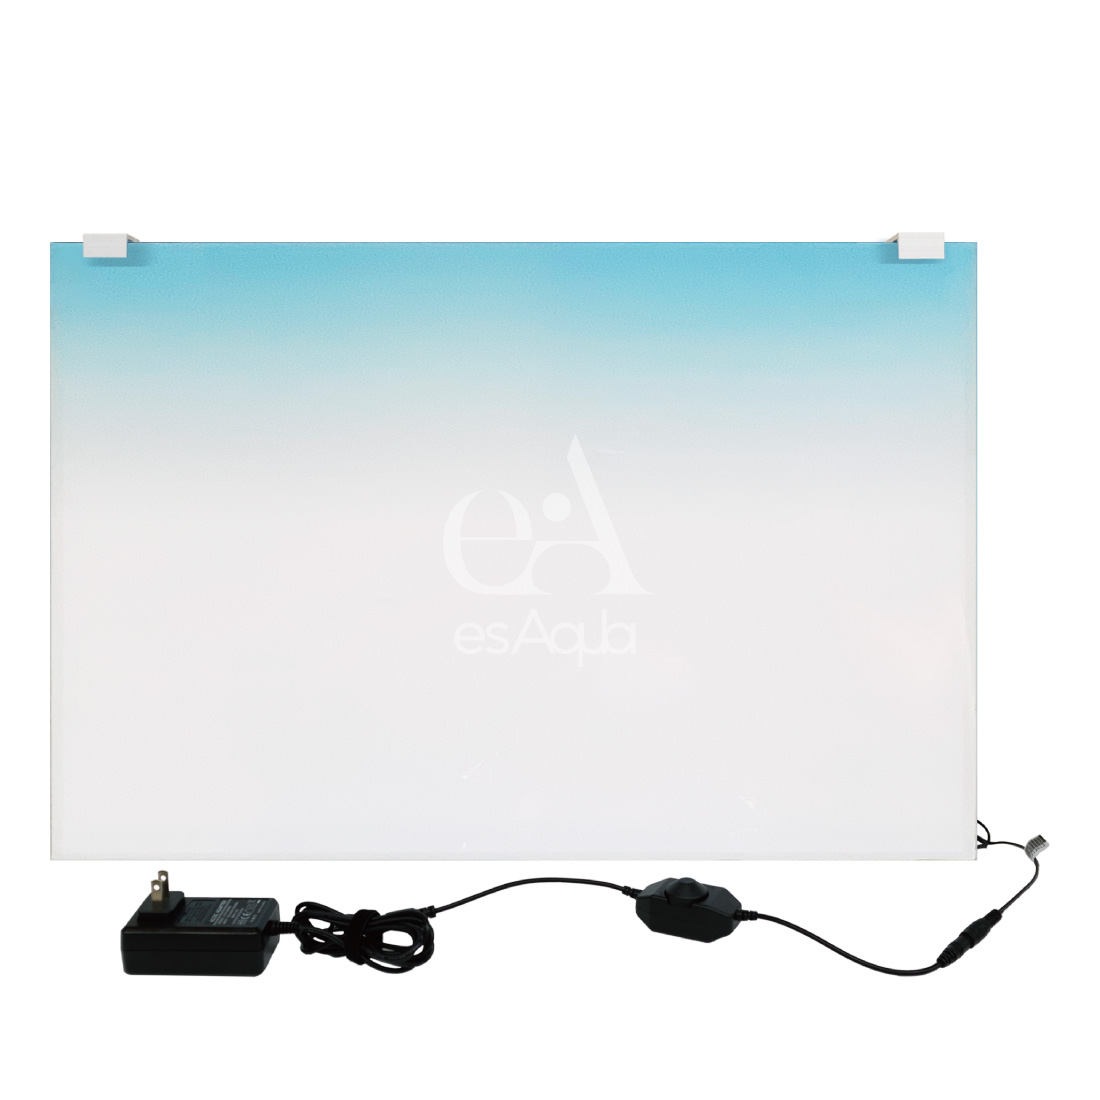 esAqua 水槽 バック スクリーン (300×300) LEDライト PSE認証 メーカー正規保証 アクアリウム ライトスクリーン【 調光器付 】  水槽ライト パルダリウム